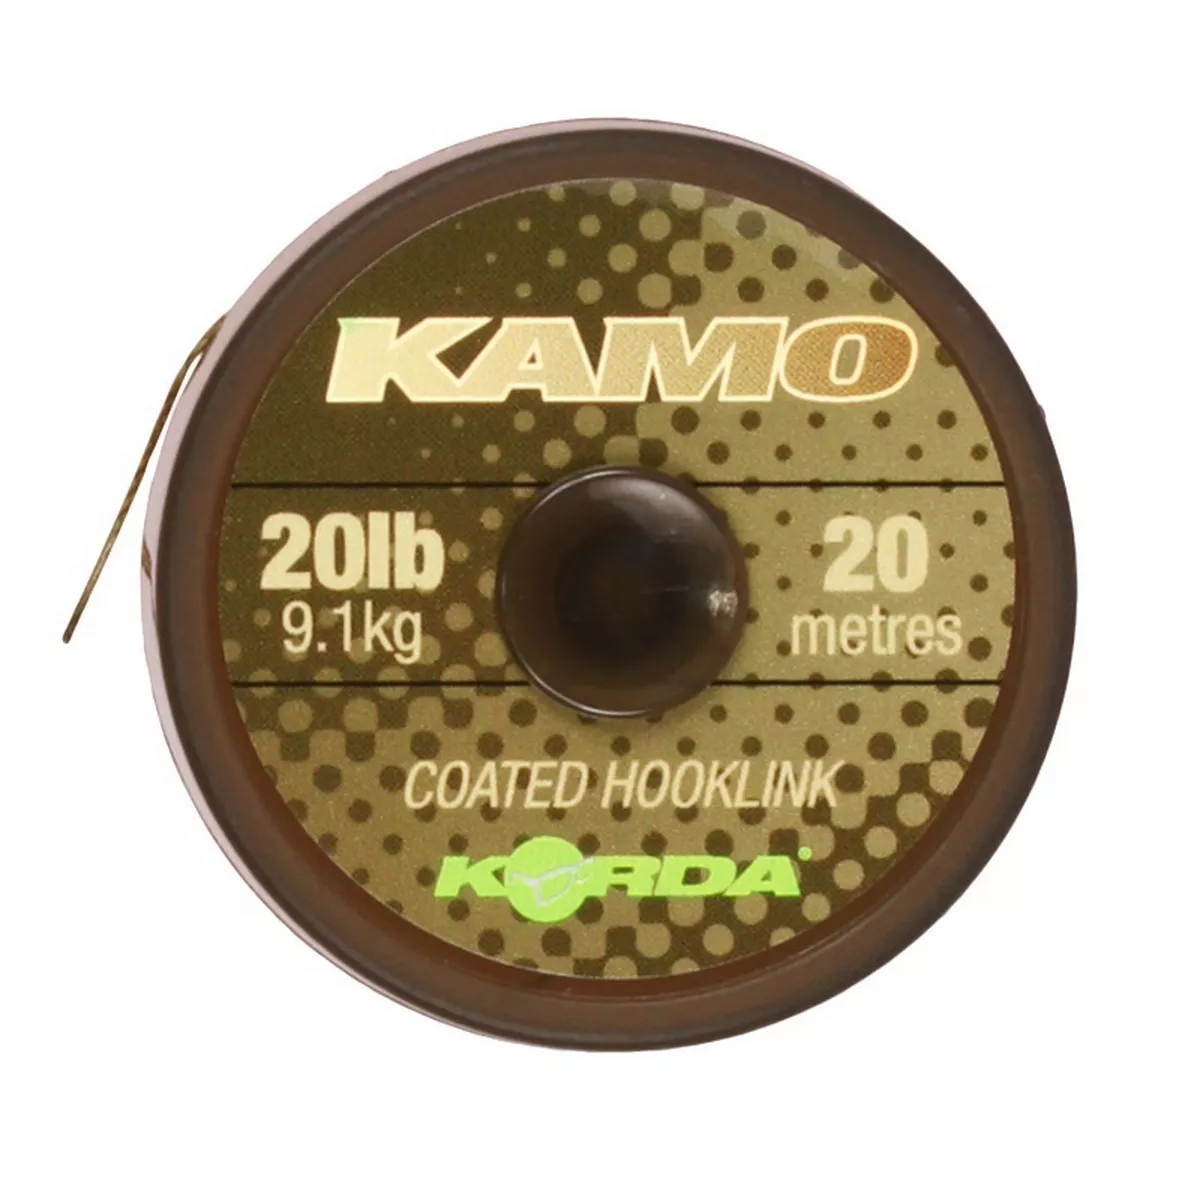 KORDA Kamo coated Hooklink 20lb 20m